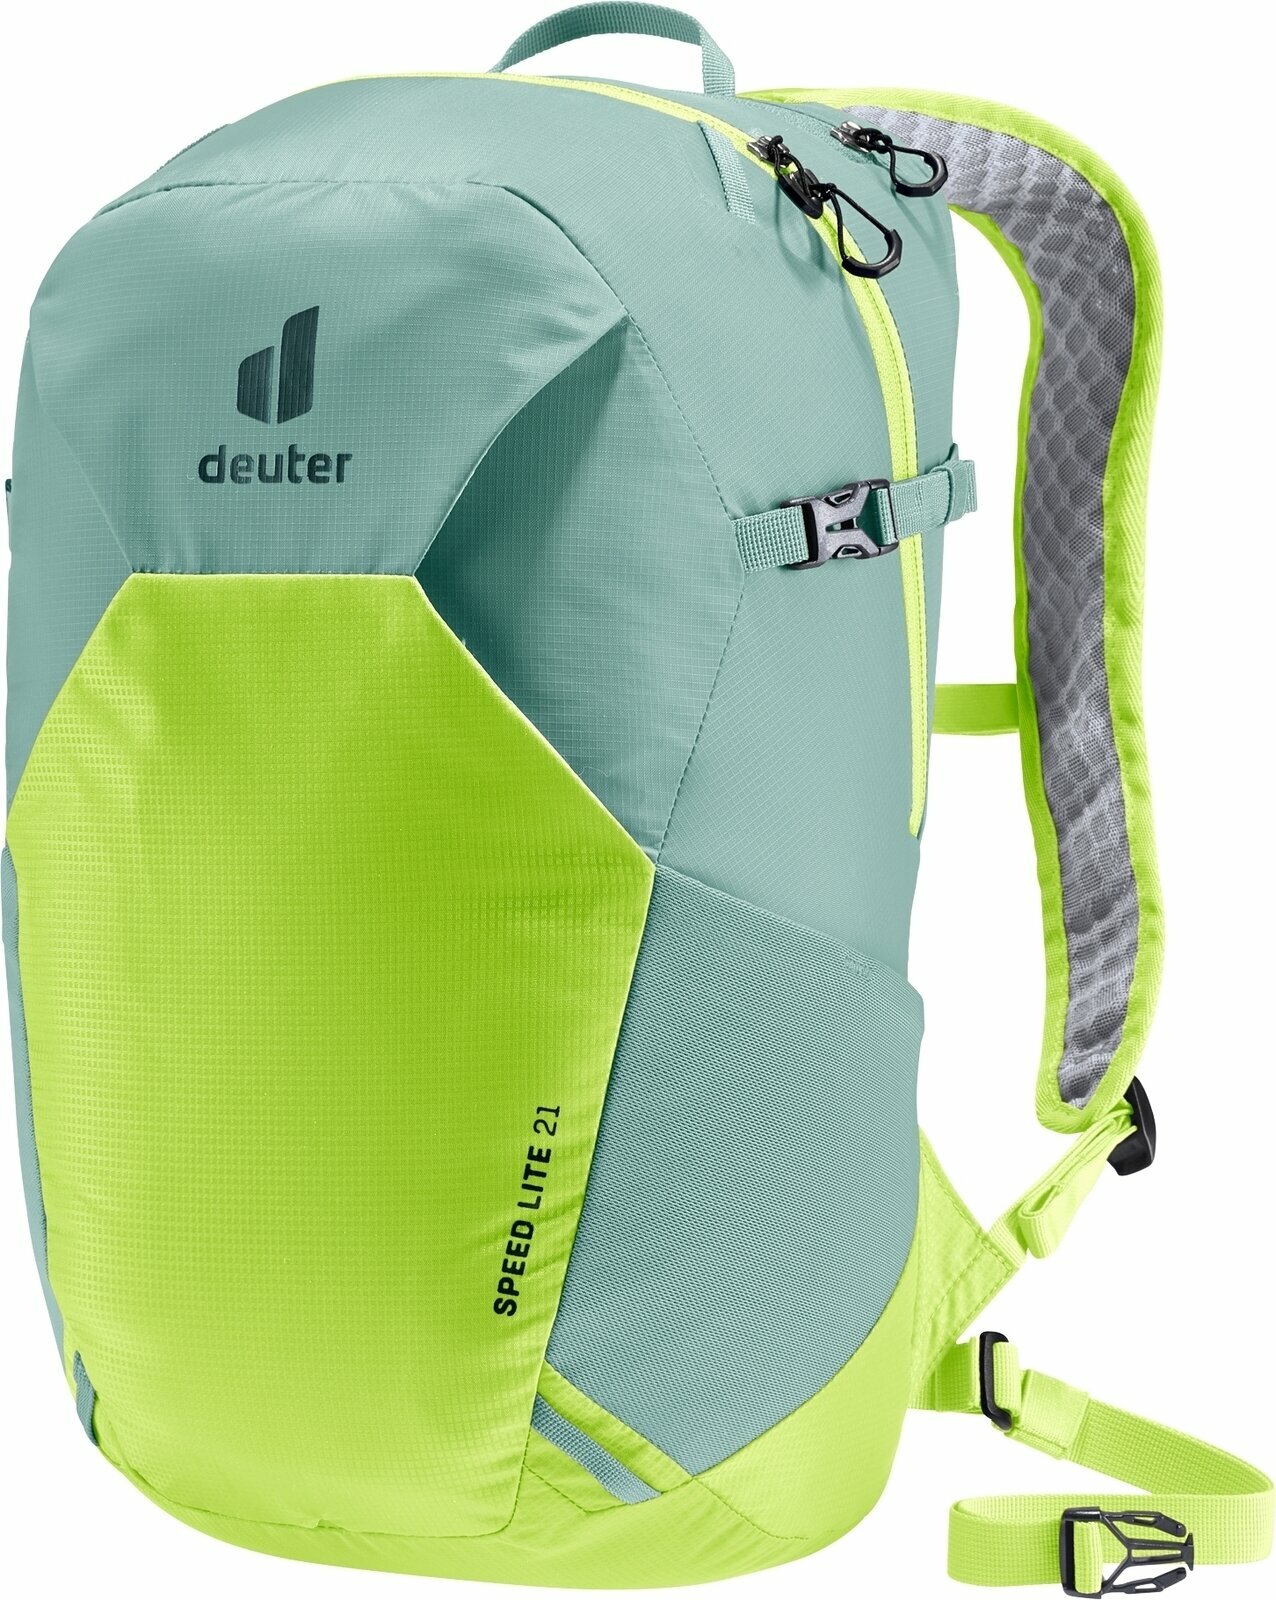 Outdoor plecak Deuter Speed Lite 21 Jade/Citrus Outdoor plecak